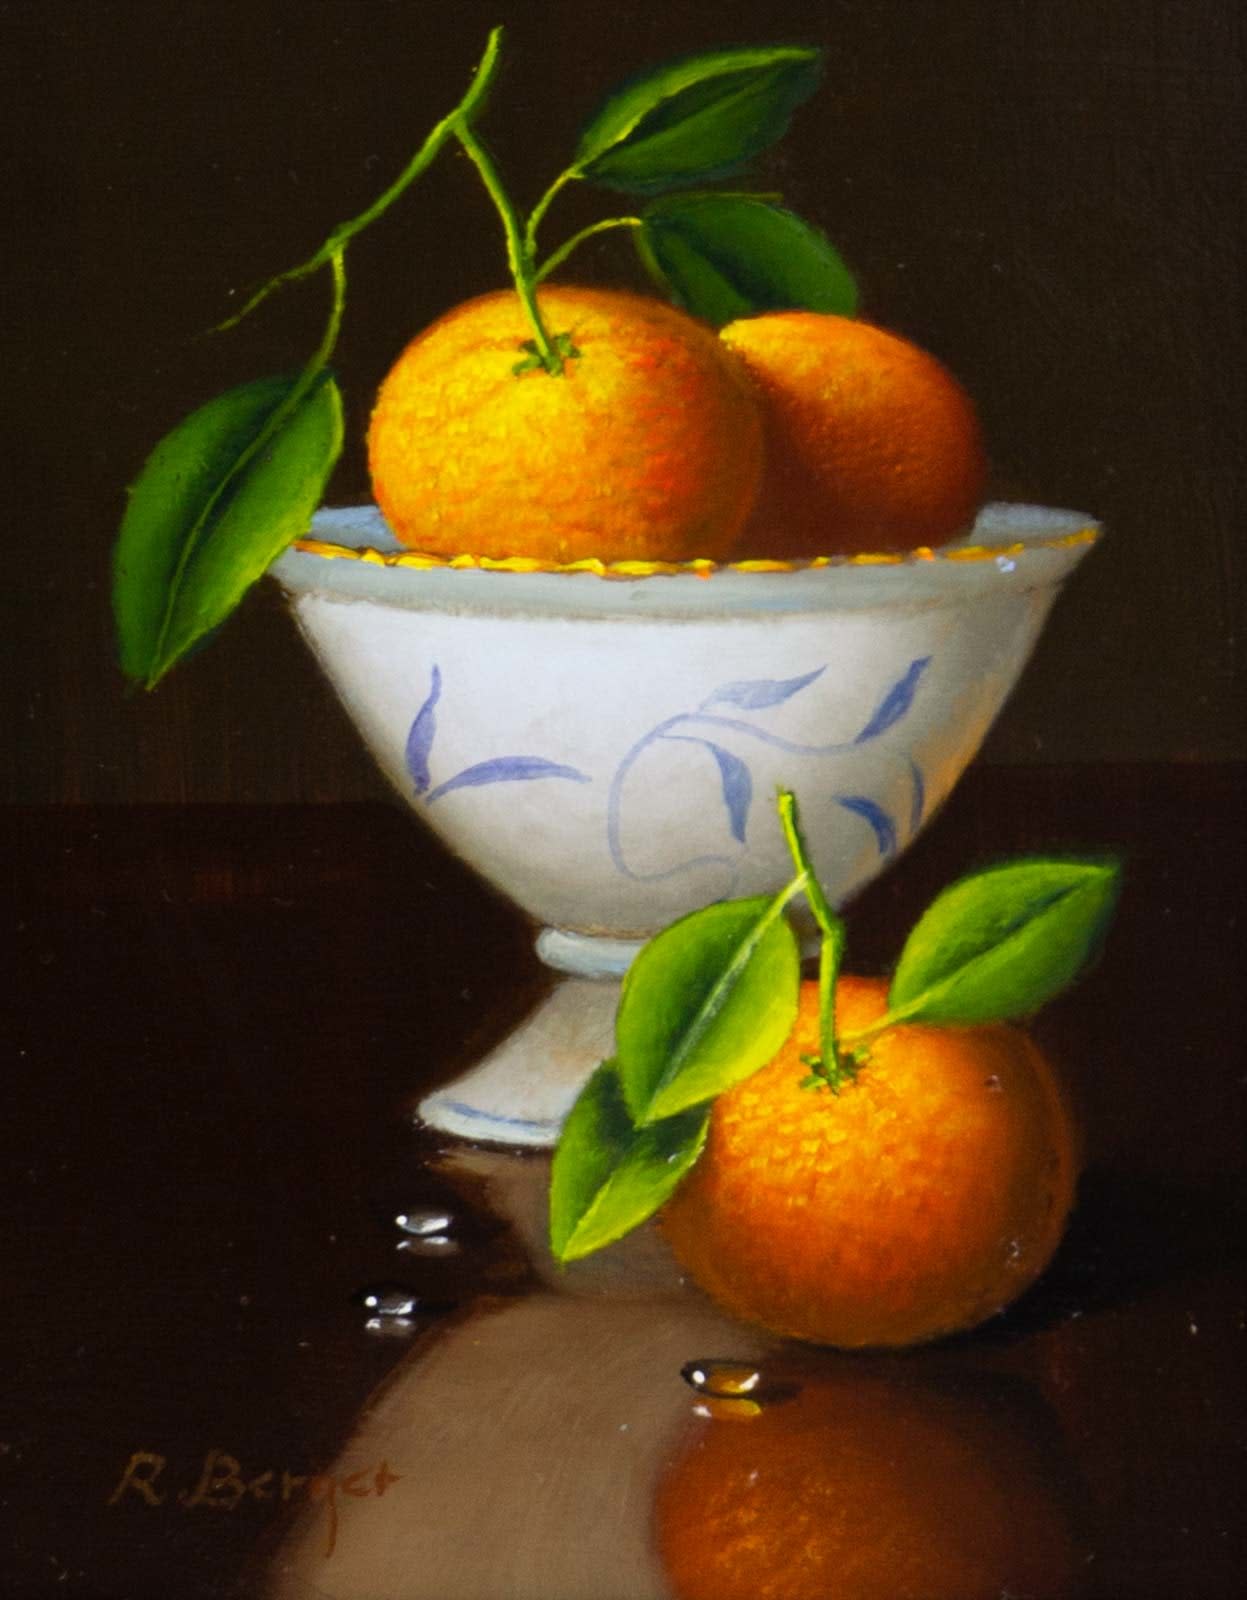 Sevillan Oranges